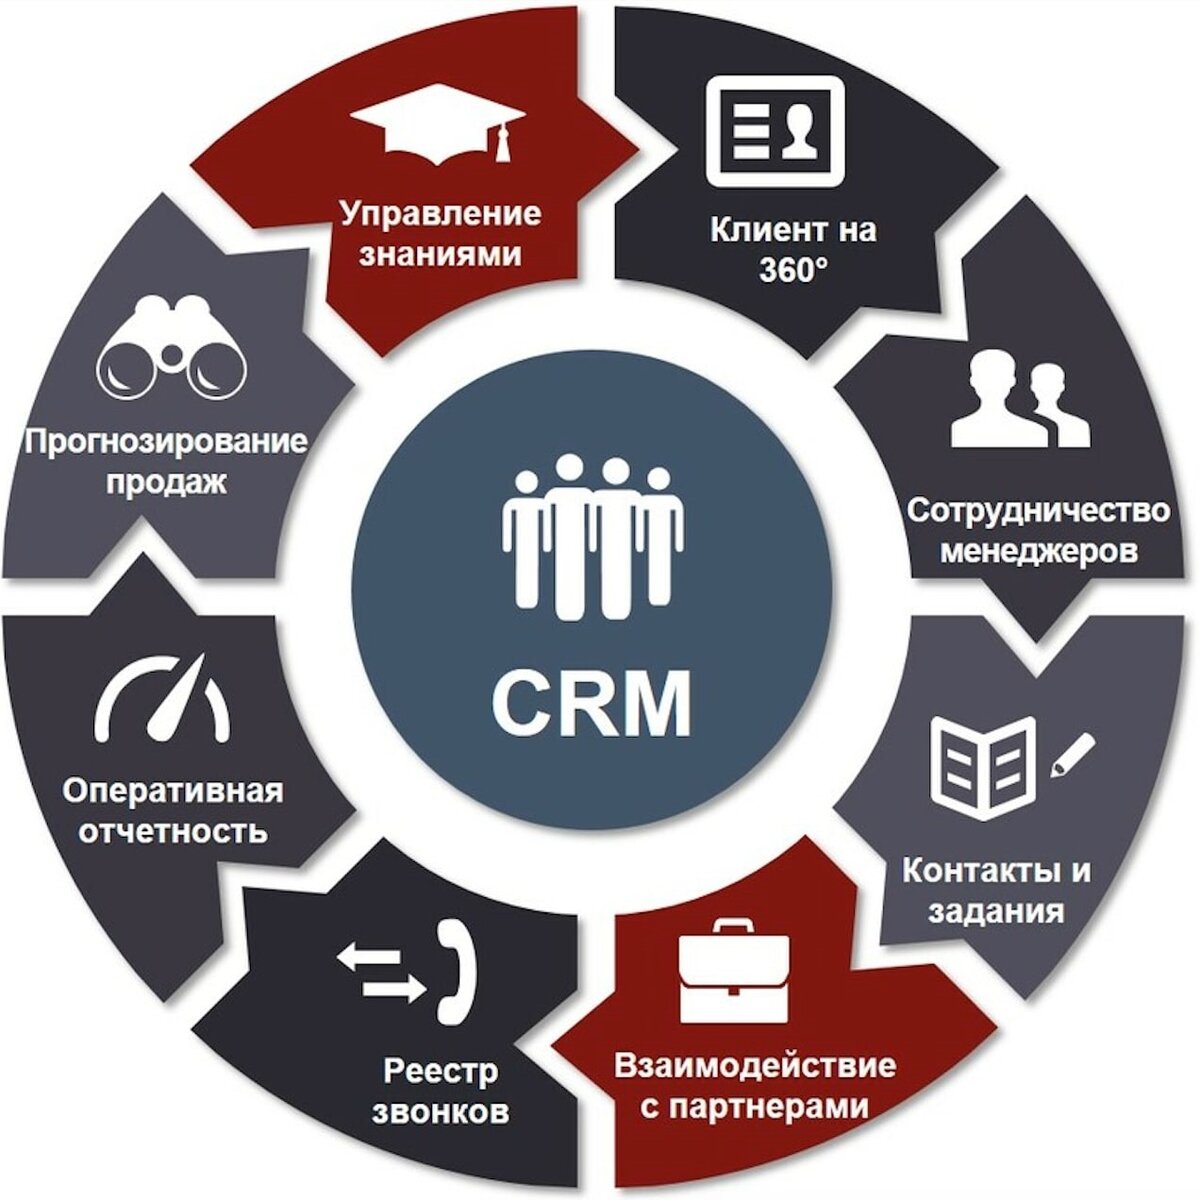 Использования в любой части. CRM системы управления взаимоотношениями с клиентами. GRM - система управления ЗВАИМООТНОШЕНИЯ С клиентами. CRM (customer relationship Management) системы. CRM системы что это.